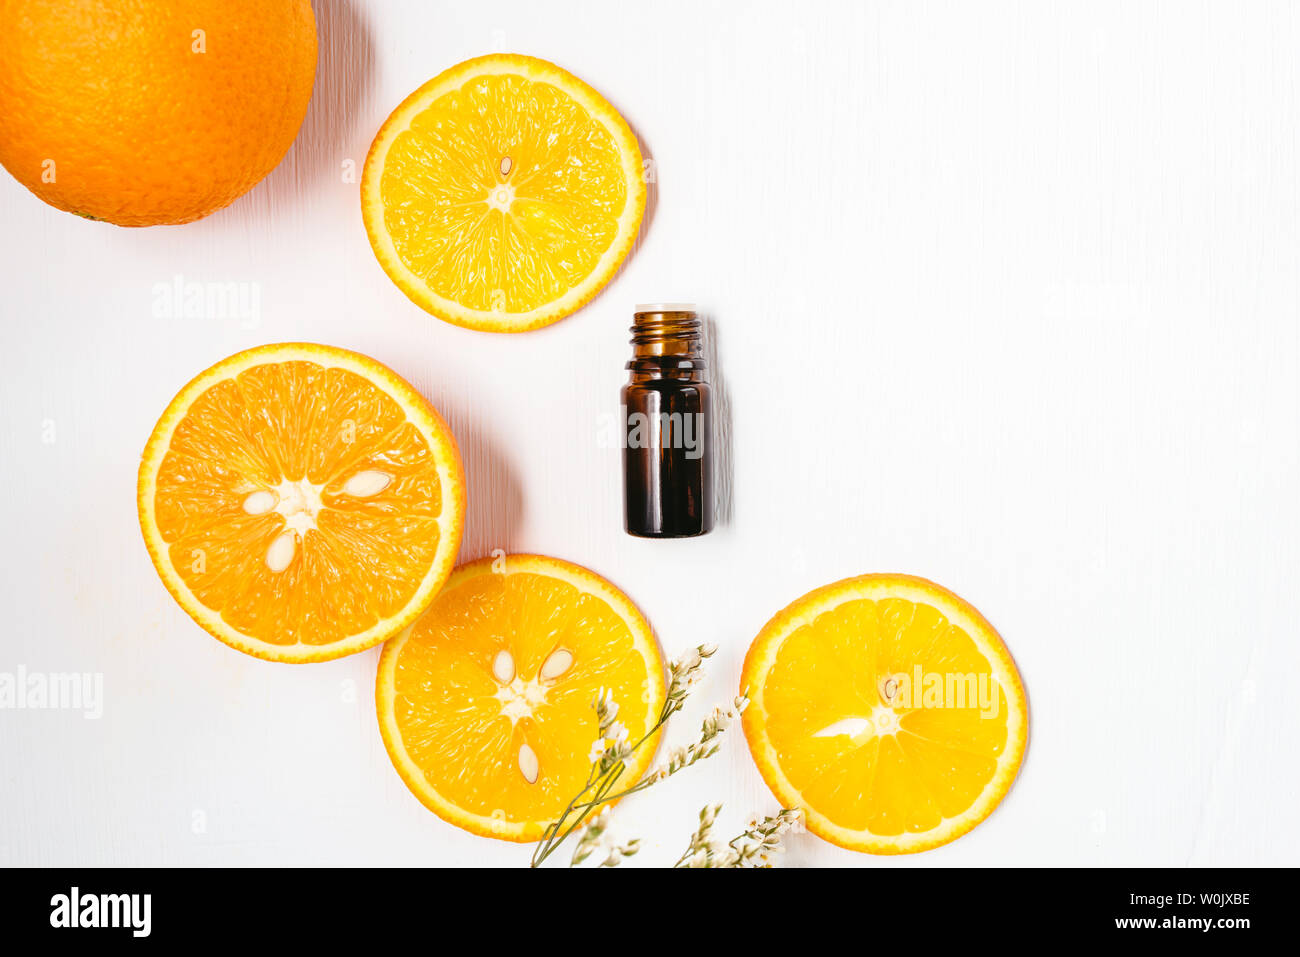 Bouteille de l'huile essentielle d'orange sur fond blanc pour la beauté, soins de la peau, bien-être et à des fins médicinales. Mise à plat. Banque D'Images